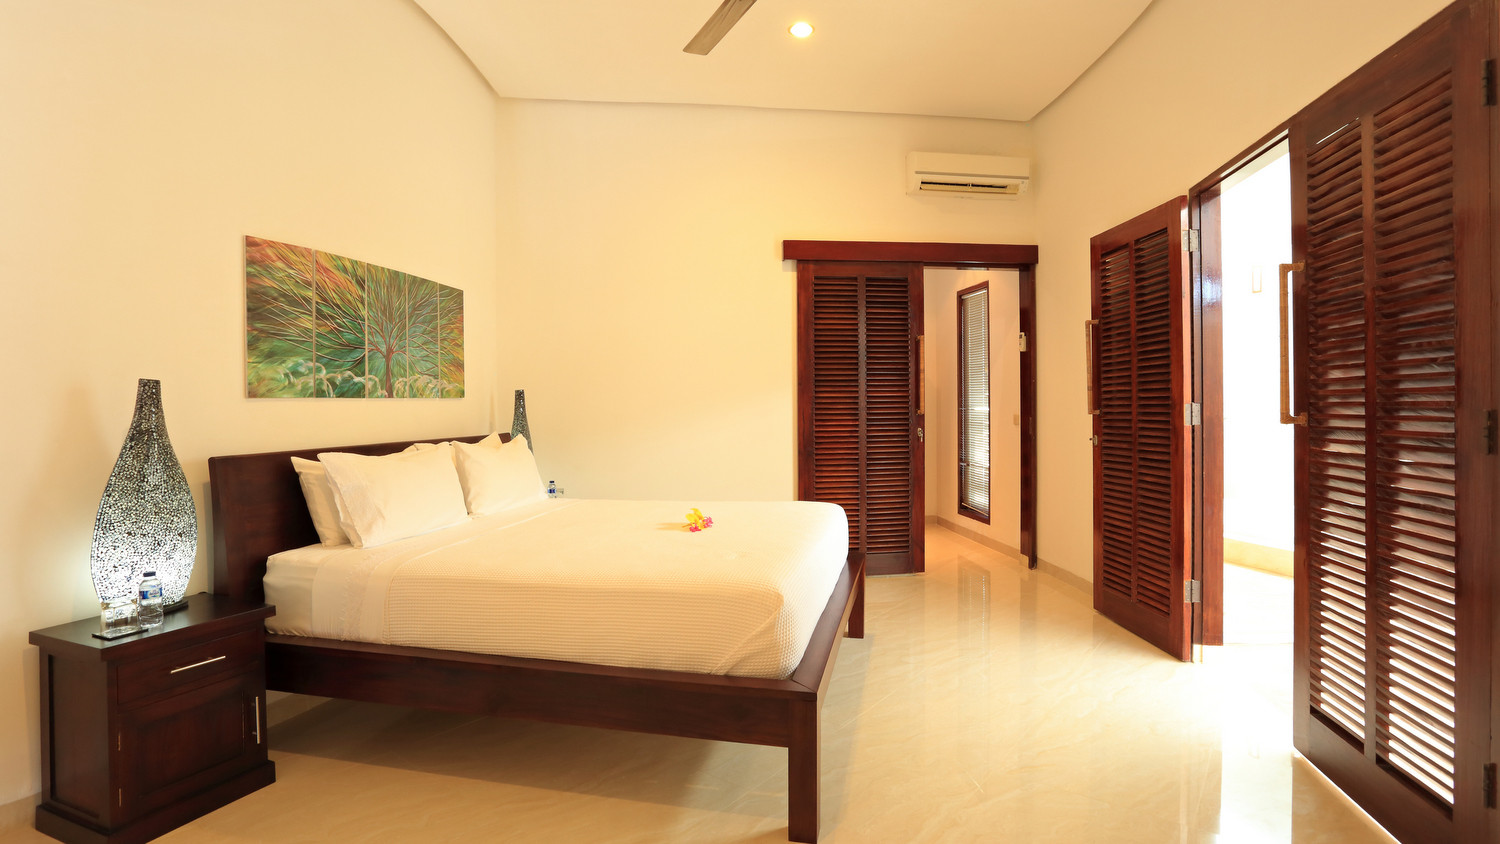 Villa Kipas Retreat in Senggigi, Bali (3 bedrooms) - Best Price & Reviews!